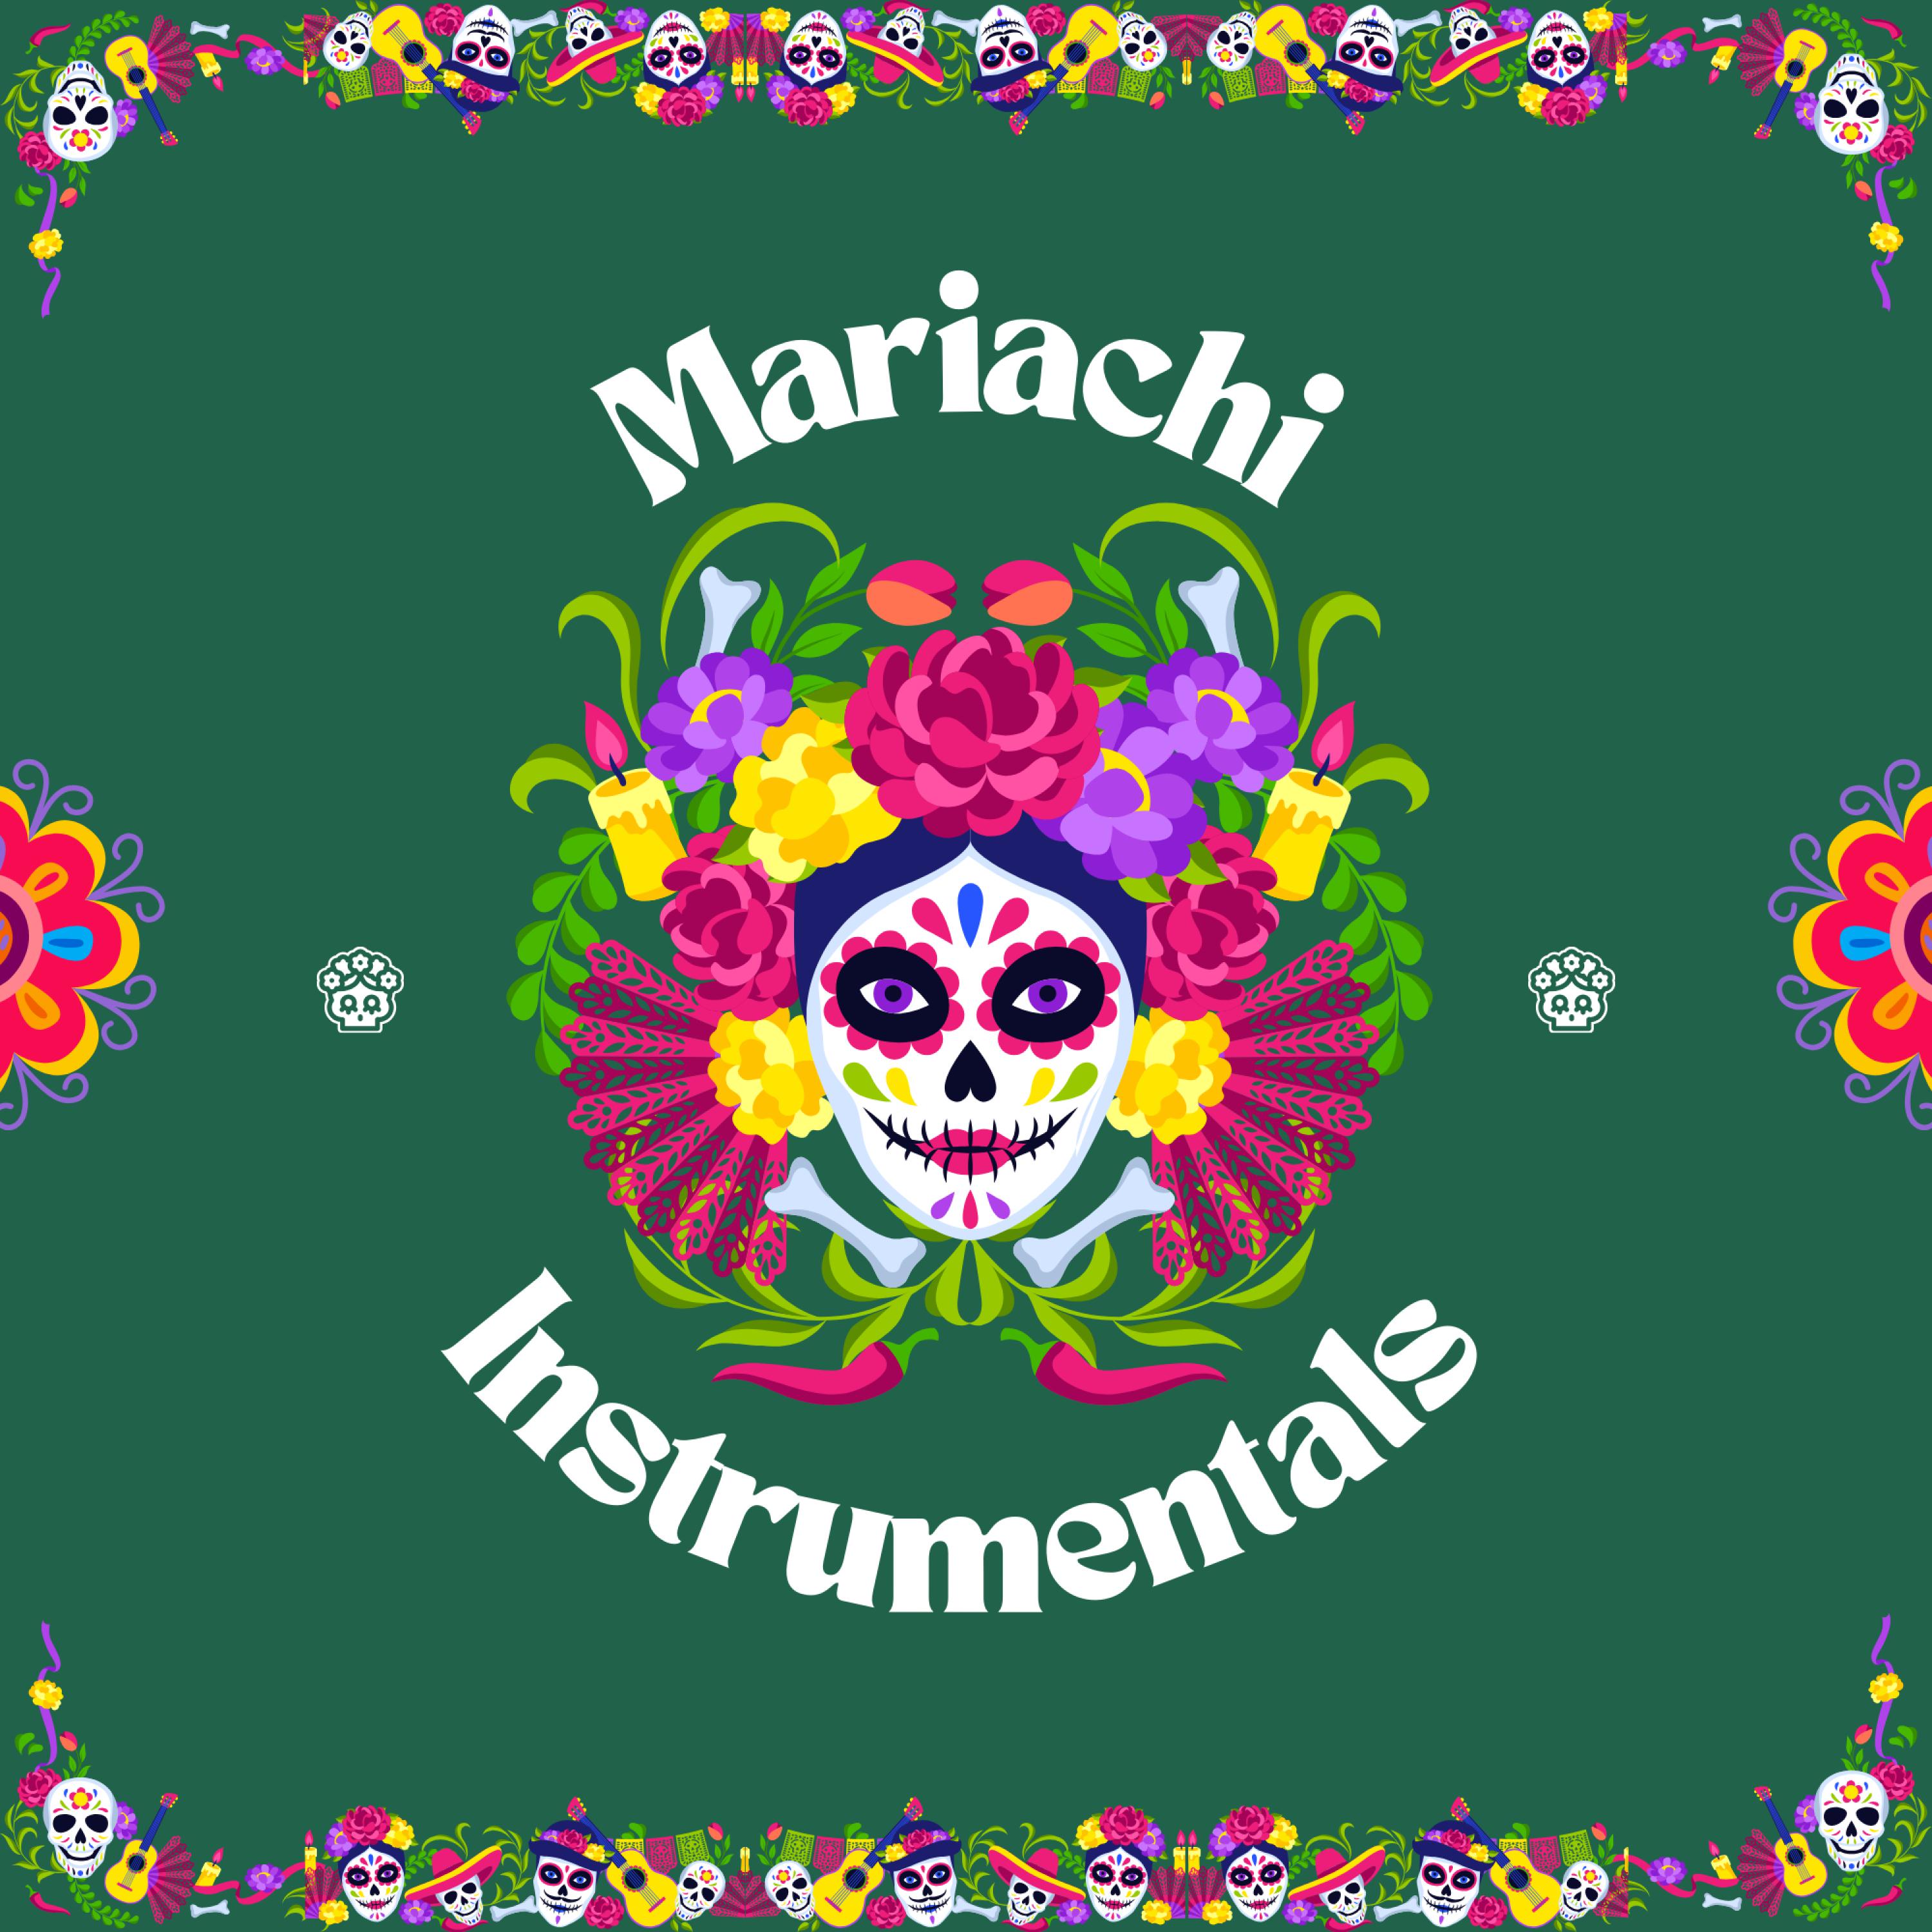 Mariachi Instrumentals - Vibraciones de Fiesta